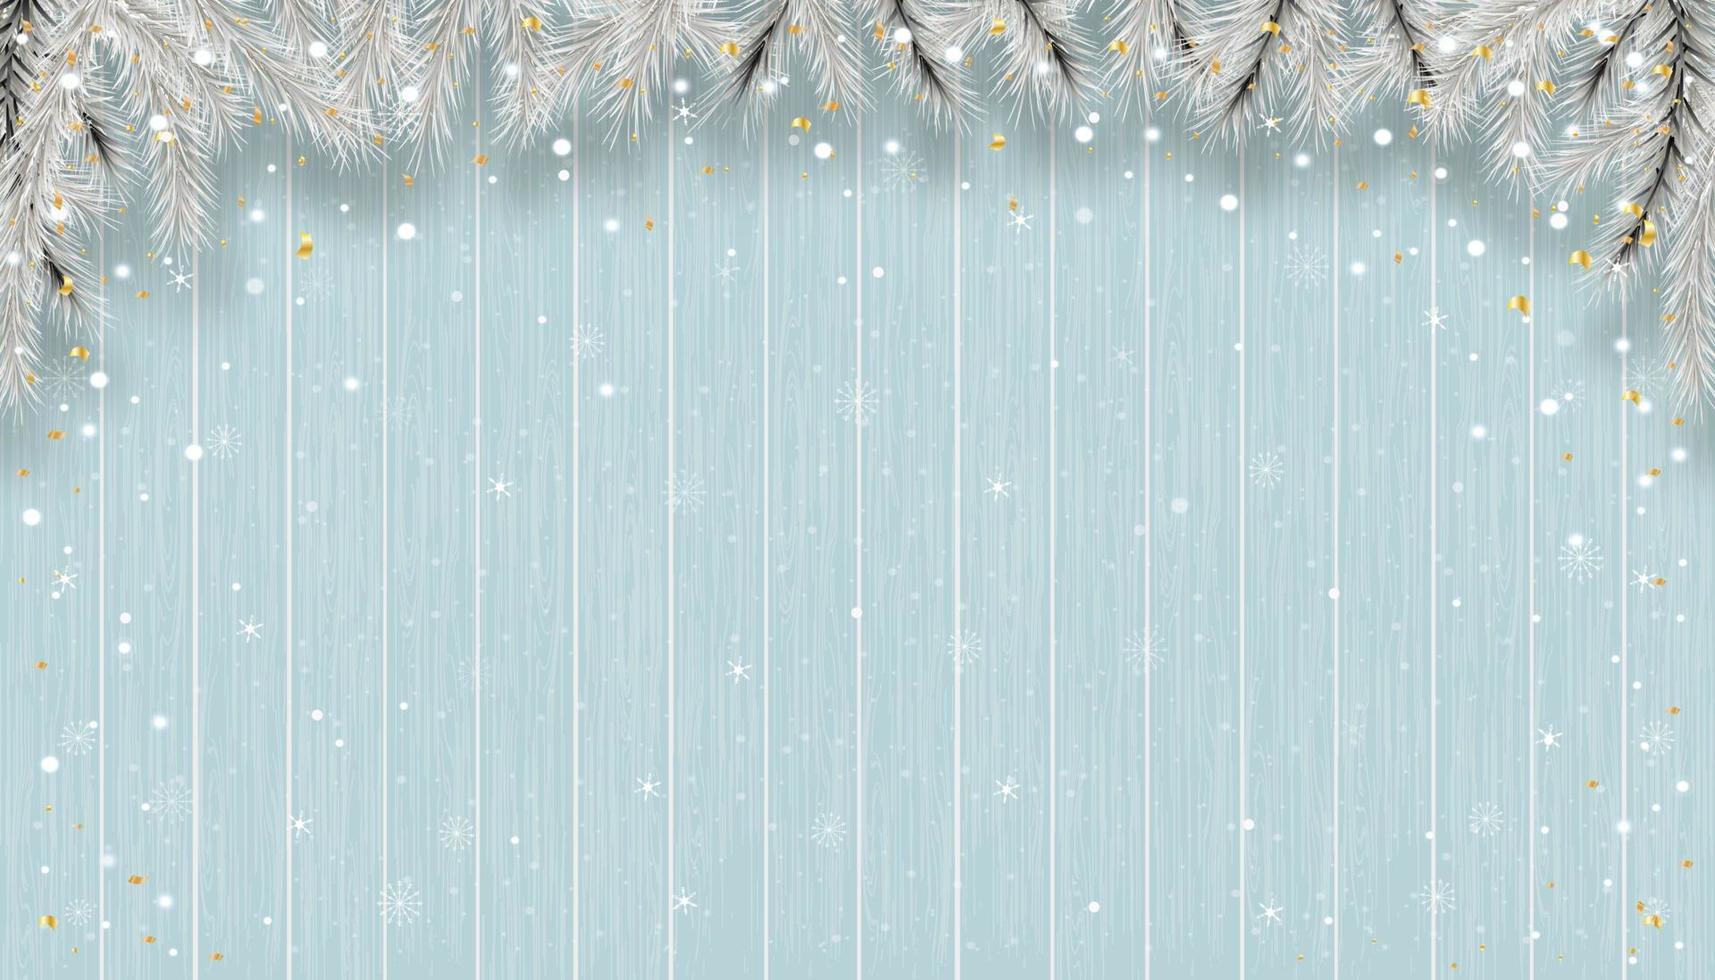 fundo de natal com flocos de neve na textura de madeira azul, cena de inverno vetorial com nevando na textura do painel de madeira, pano de fundo de banner de exibição 3d para o ano novo 2023 ou promoção de natal vetor